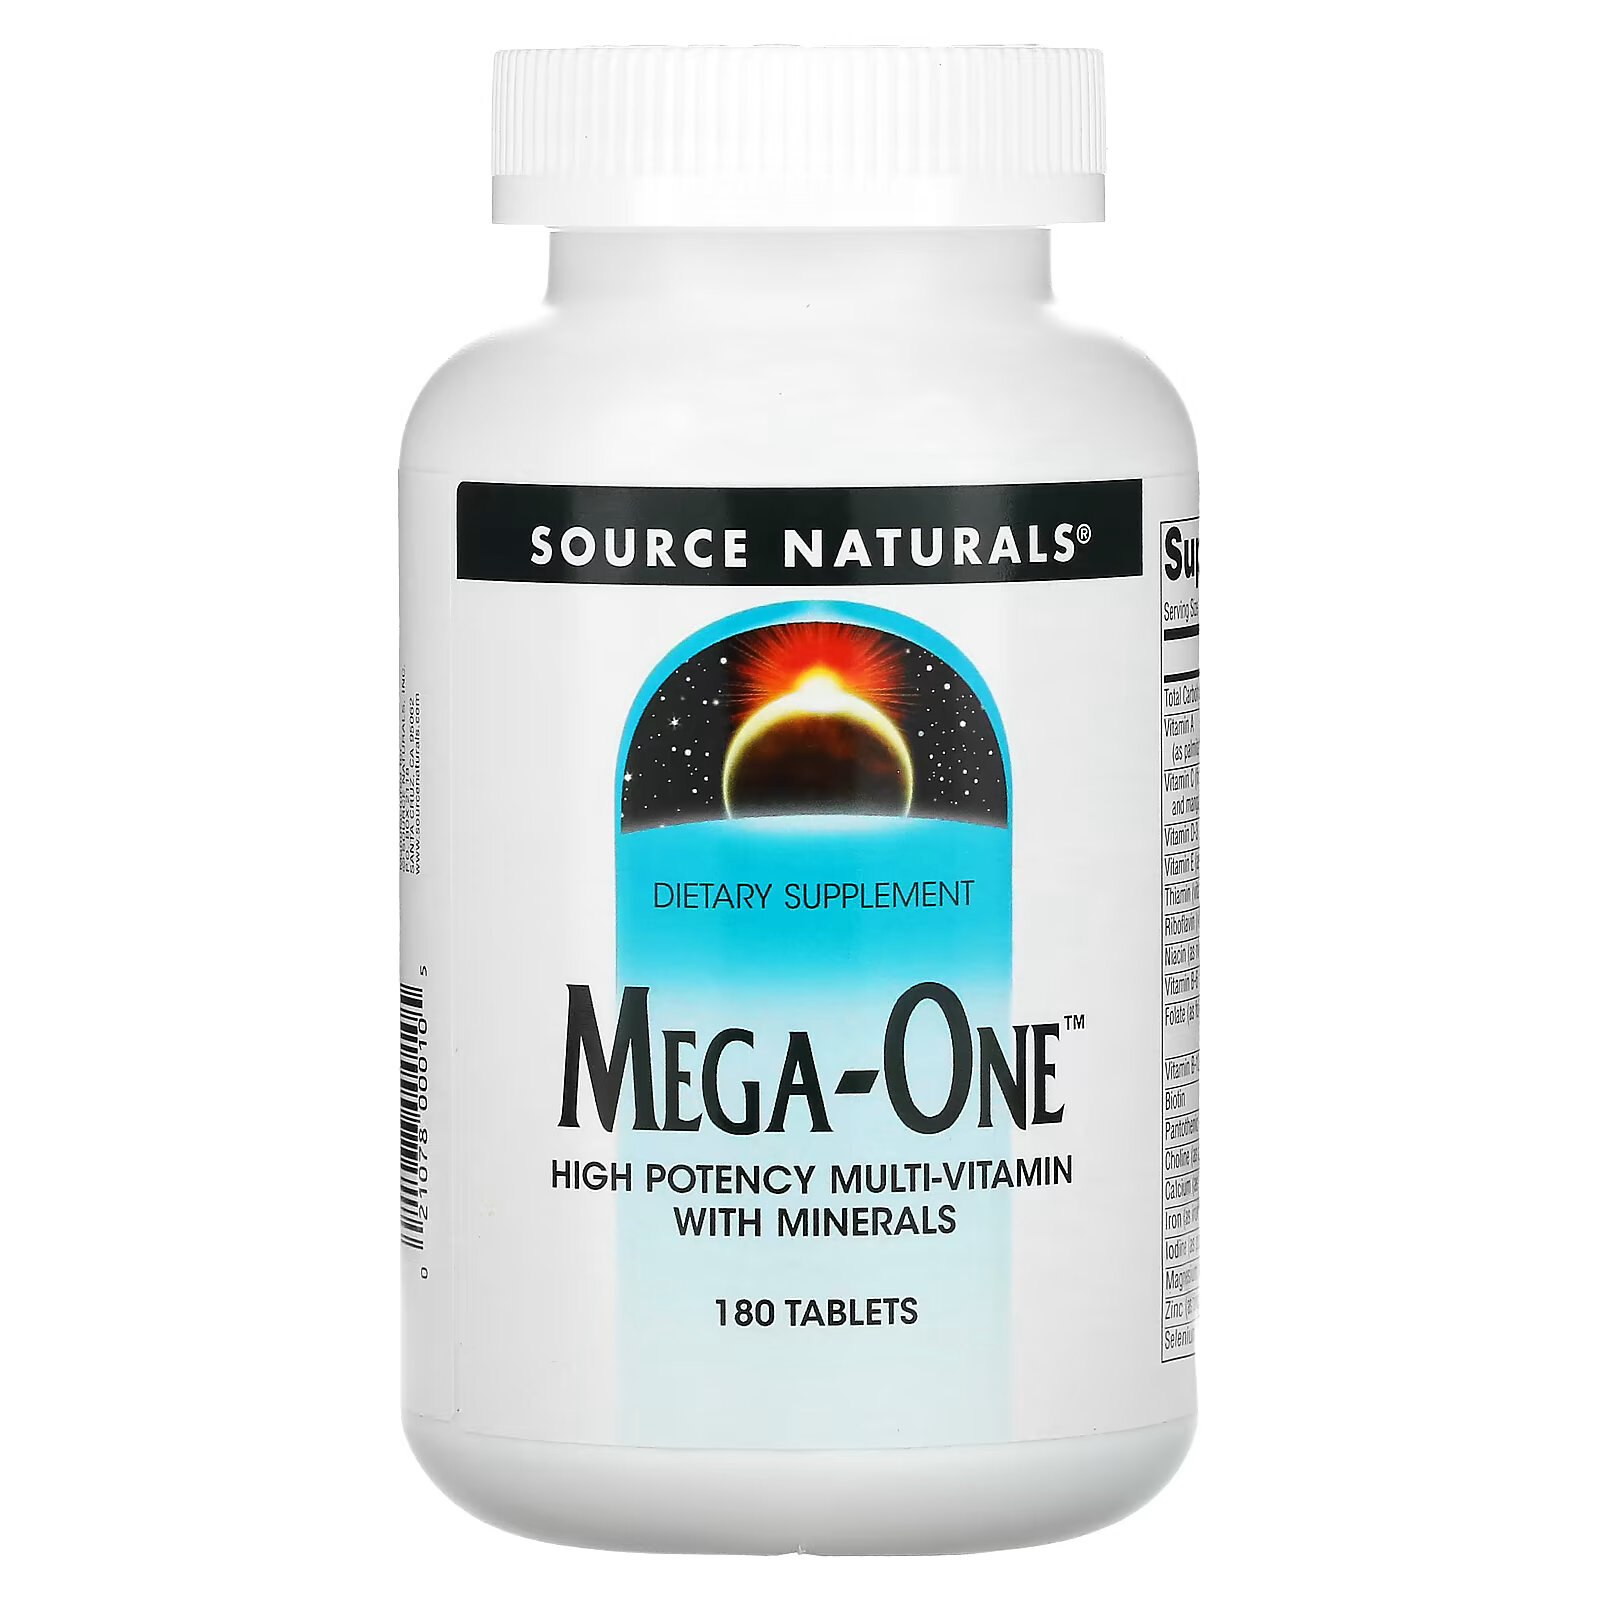 source naturals mega one высокоэффективный мультивитамин с минералами 60 таблеток Source Naturals, Mega-One, высокоэффективный мультивитамин с минералами, 180 таблеток